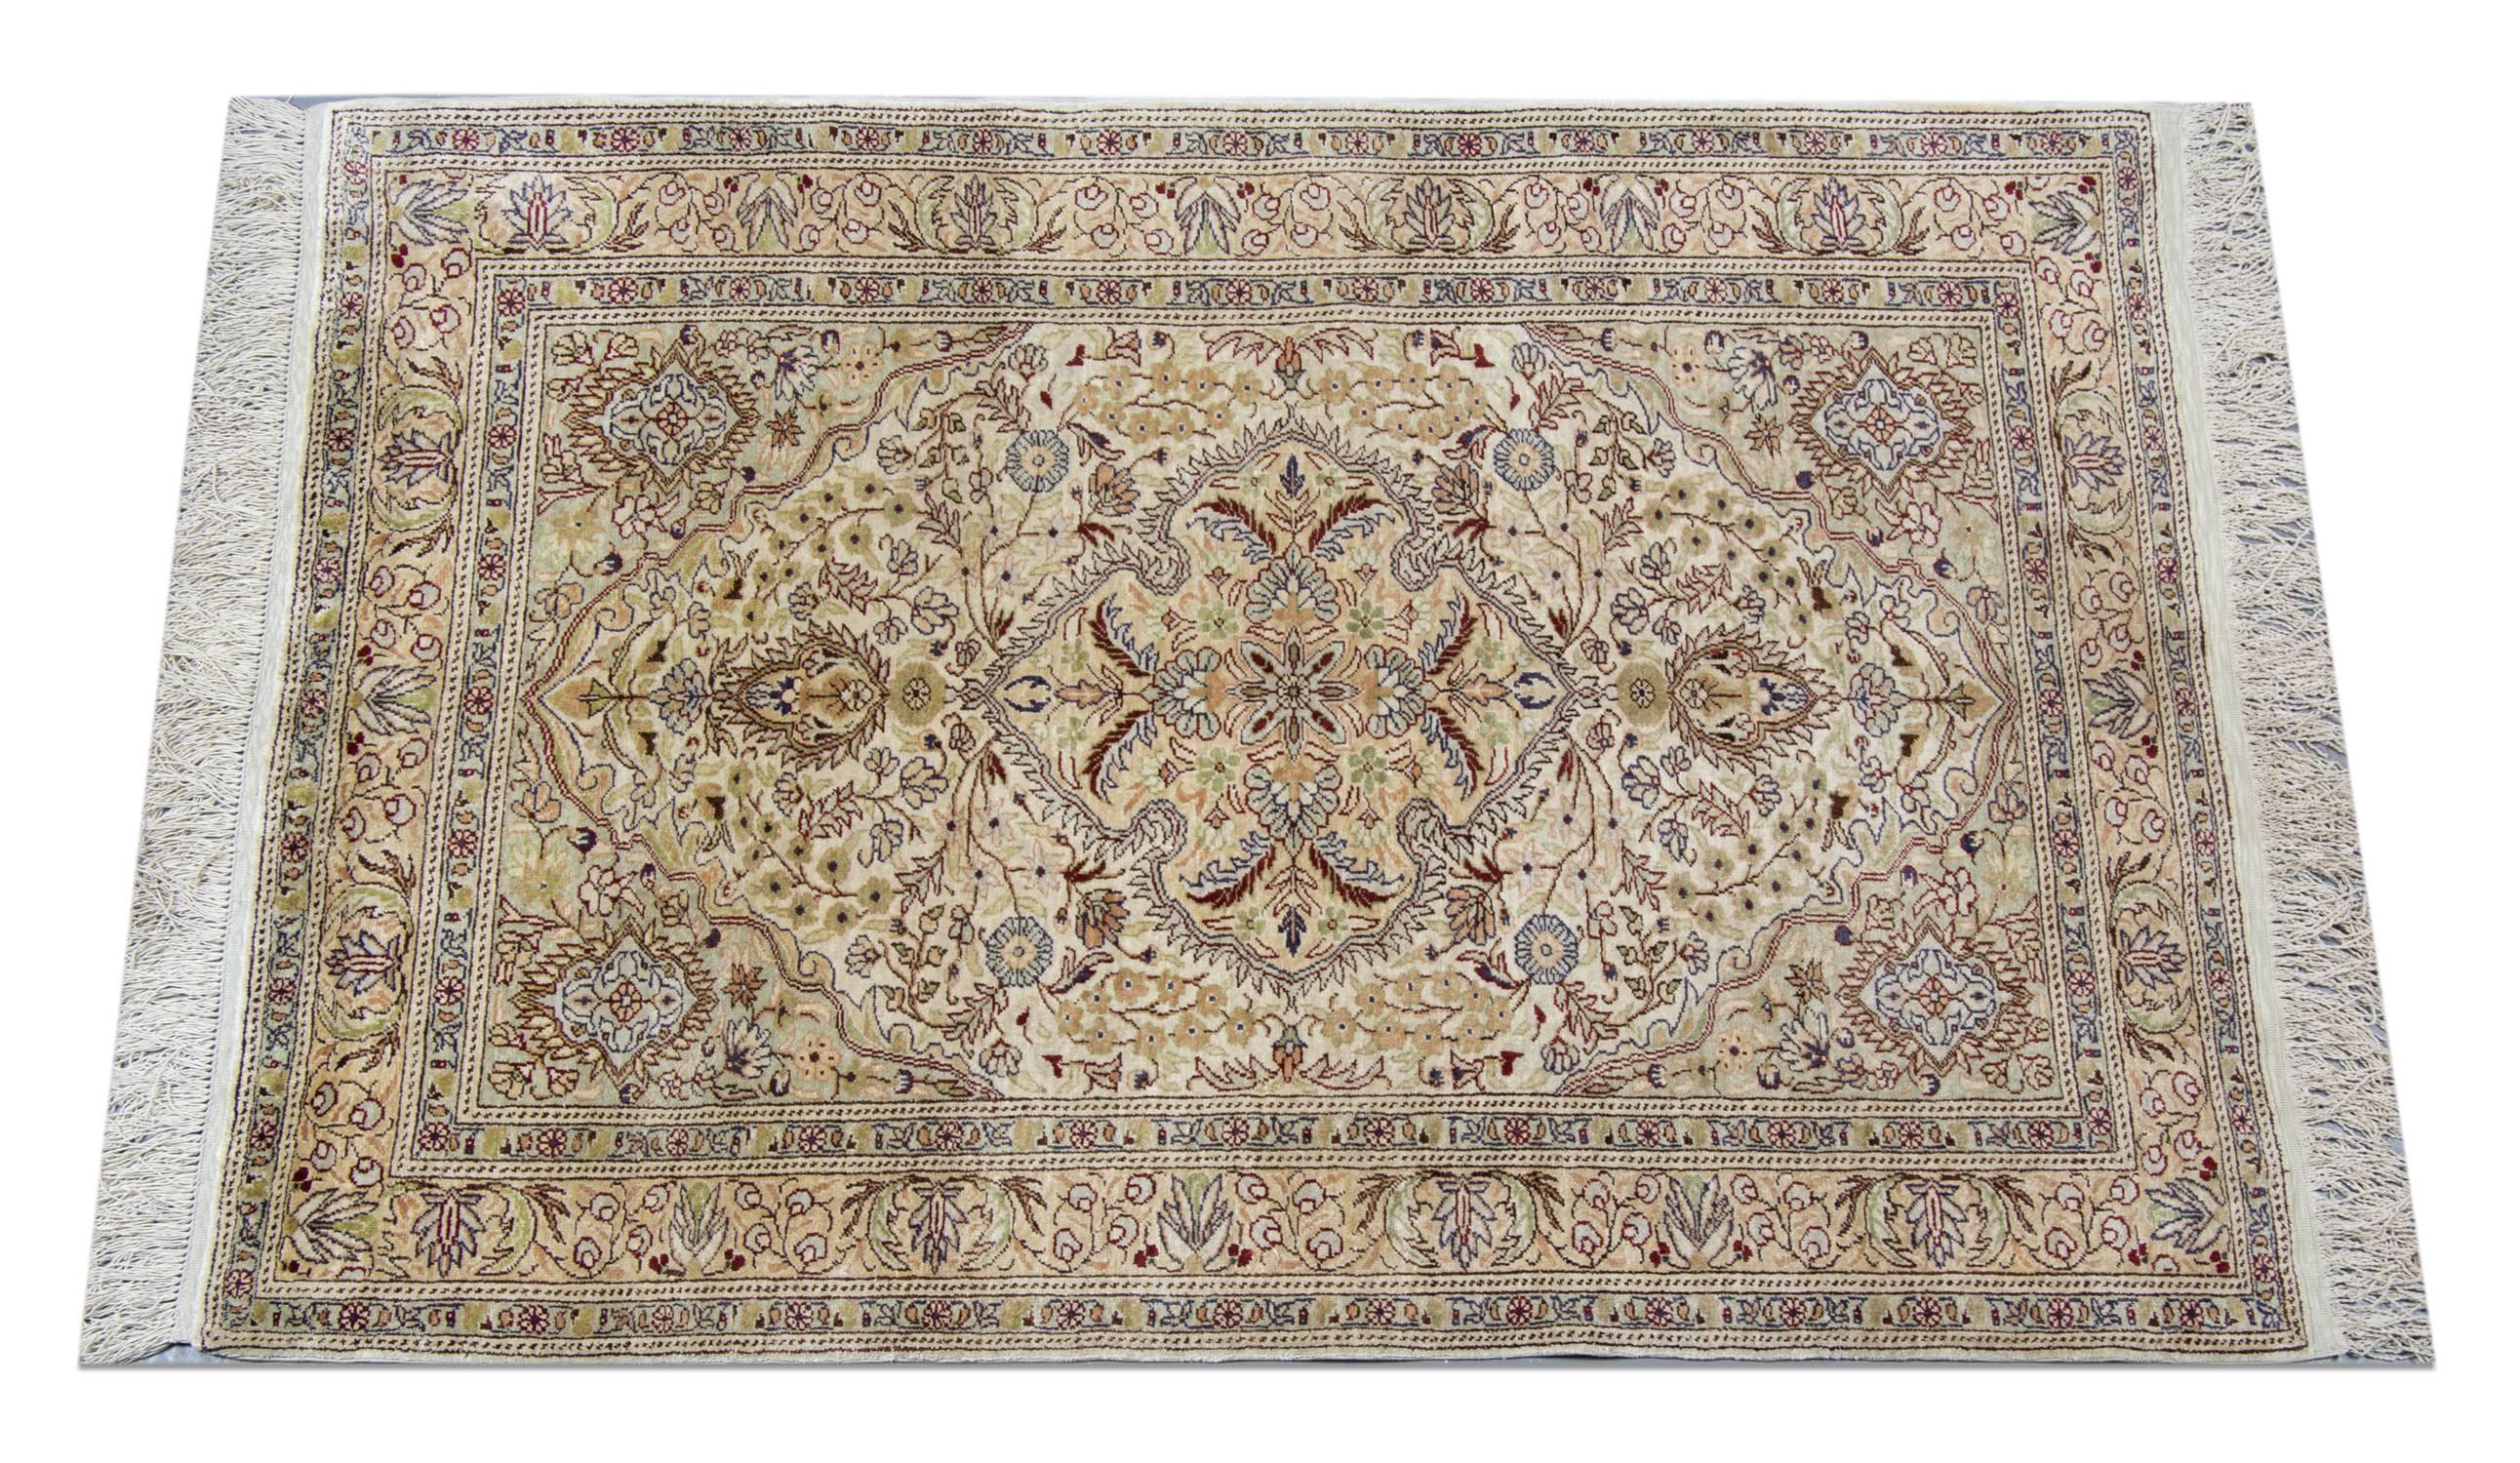 Die handgefertigte Herstellung dieser meisterhaften türkischen Teppiche begann Anfang des 20. Jahrhunderts. Die luxuriösen Teppiche aus Kayseri sind für ihre Kunstfertigkeit mit dem Flor aus Wolle oder Seide bekannt. Auch Teppiche und Teppichböden